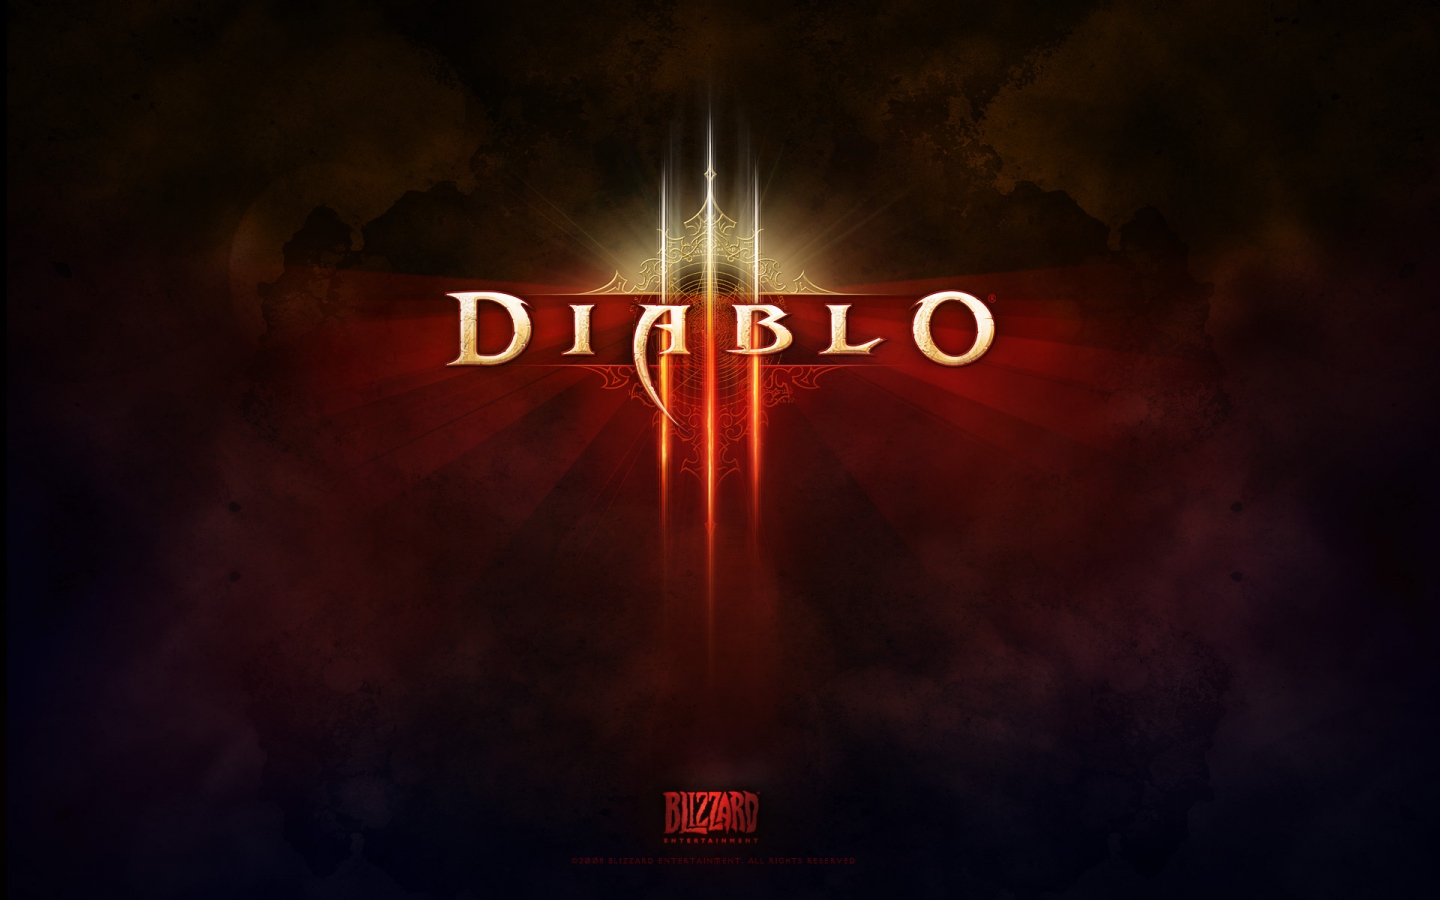 Diablo 3 Game Logo for 1440 x 900 widescreen resolution